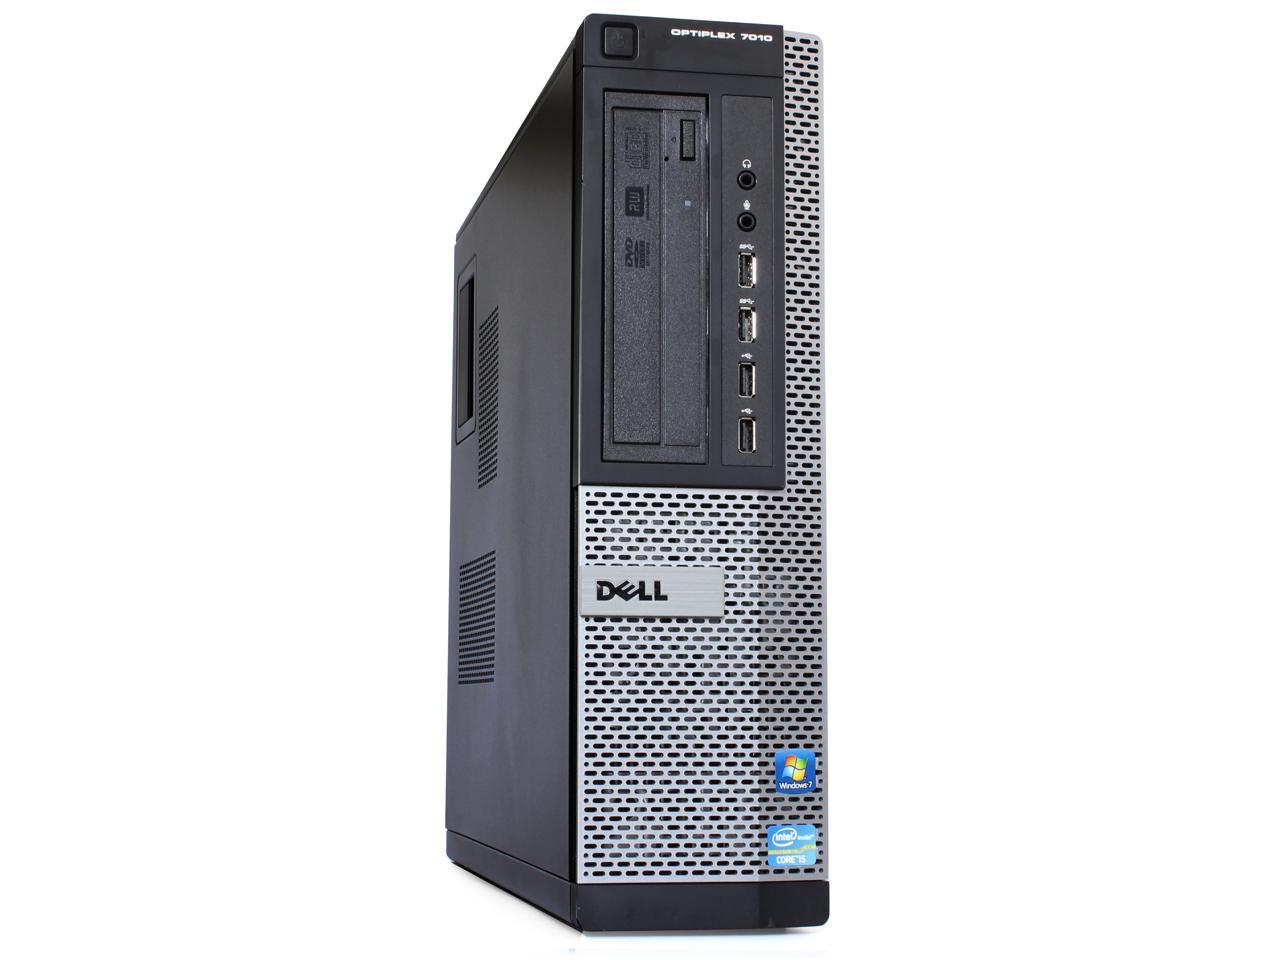 Dell Optiplex 7010 Desktop, Quad Core i7 3770 3.4Ghz, 16GB DDR3 RAM, 500GB Hard Drive, DVDRW, Windows 10 Pro